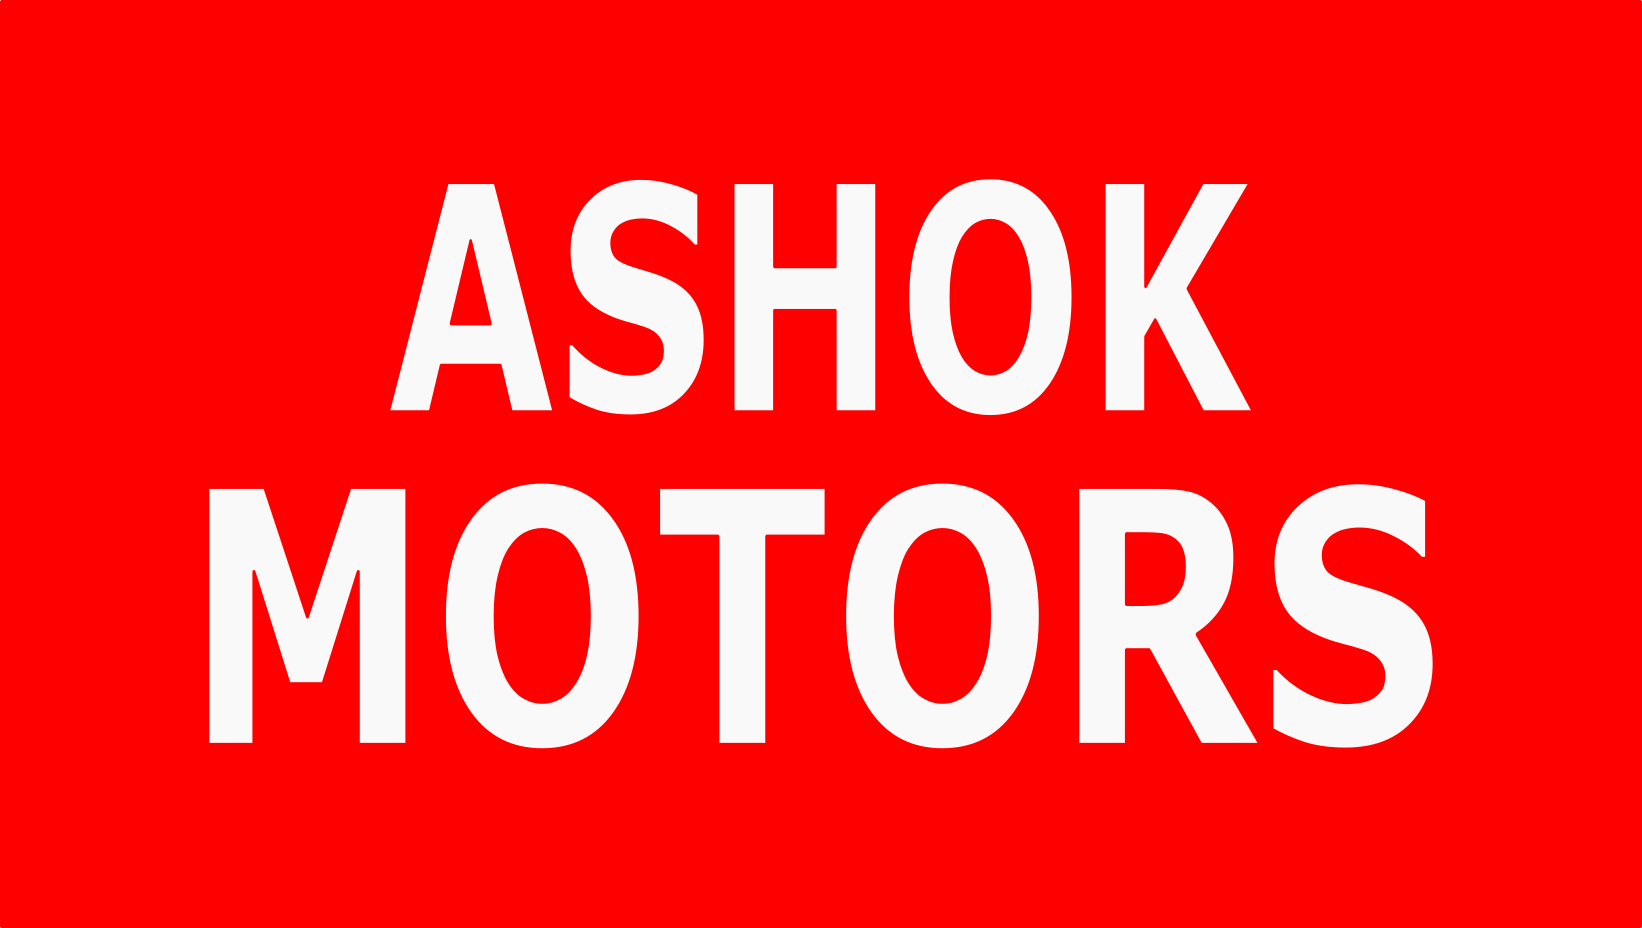 Ashok Motors